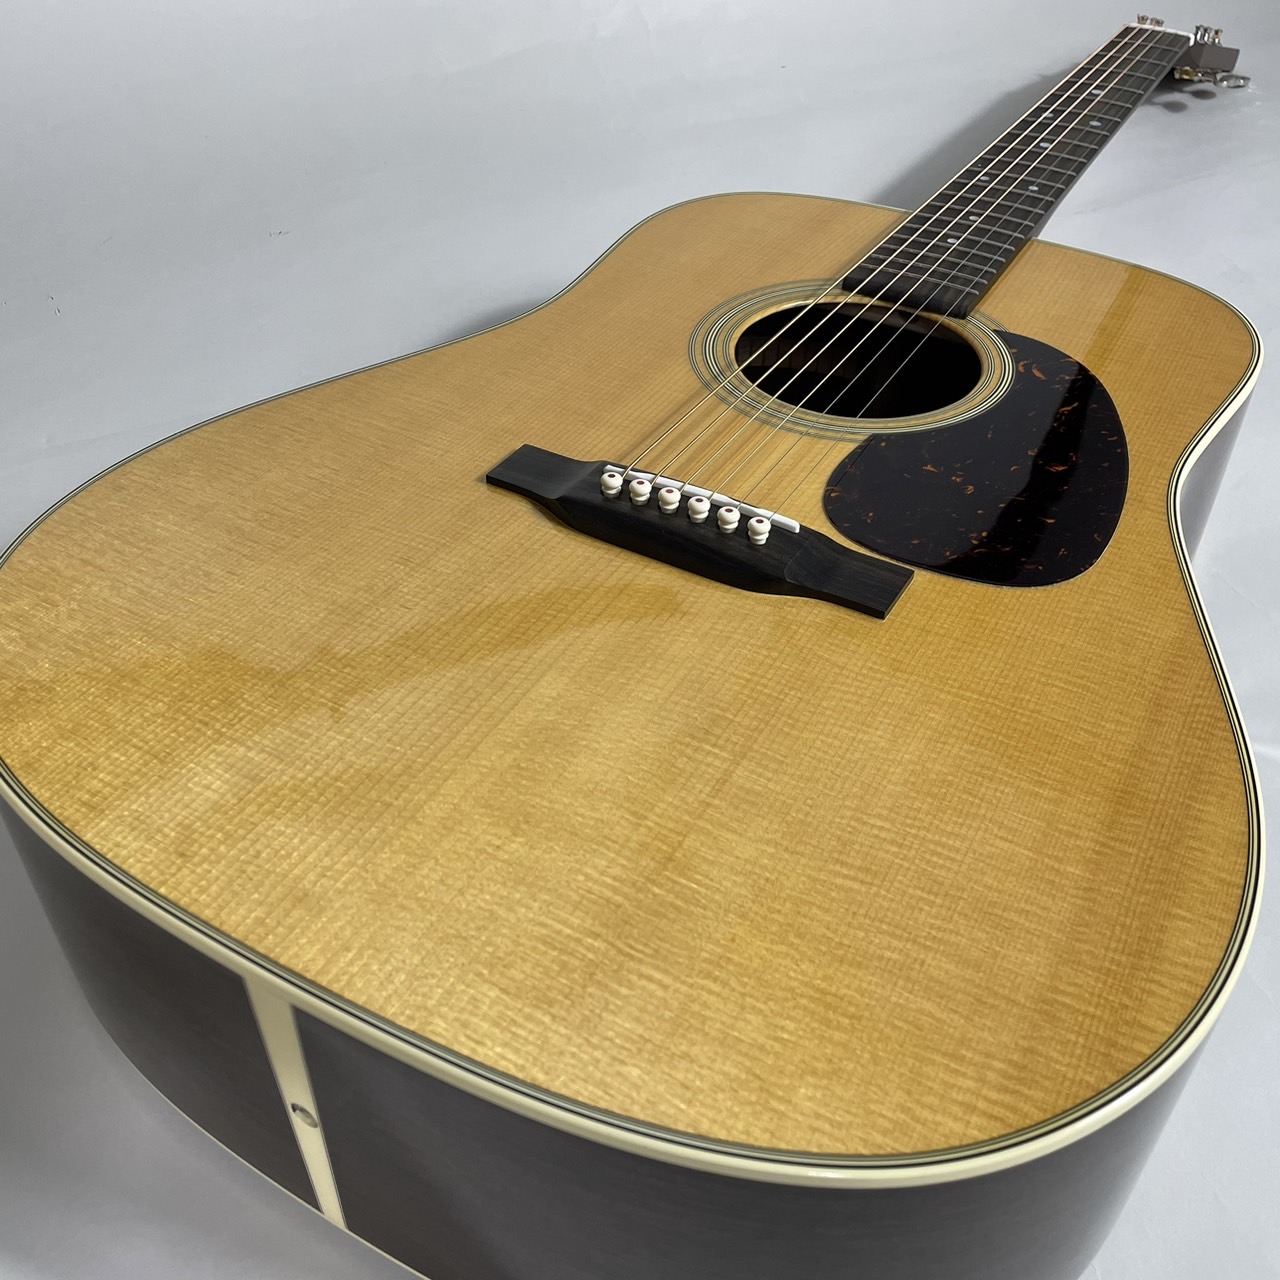 Martin D-28 Standard アコースティックギター マーチン 【 イオン